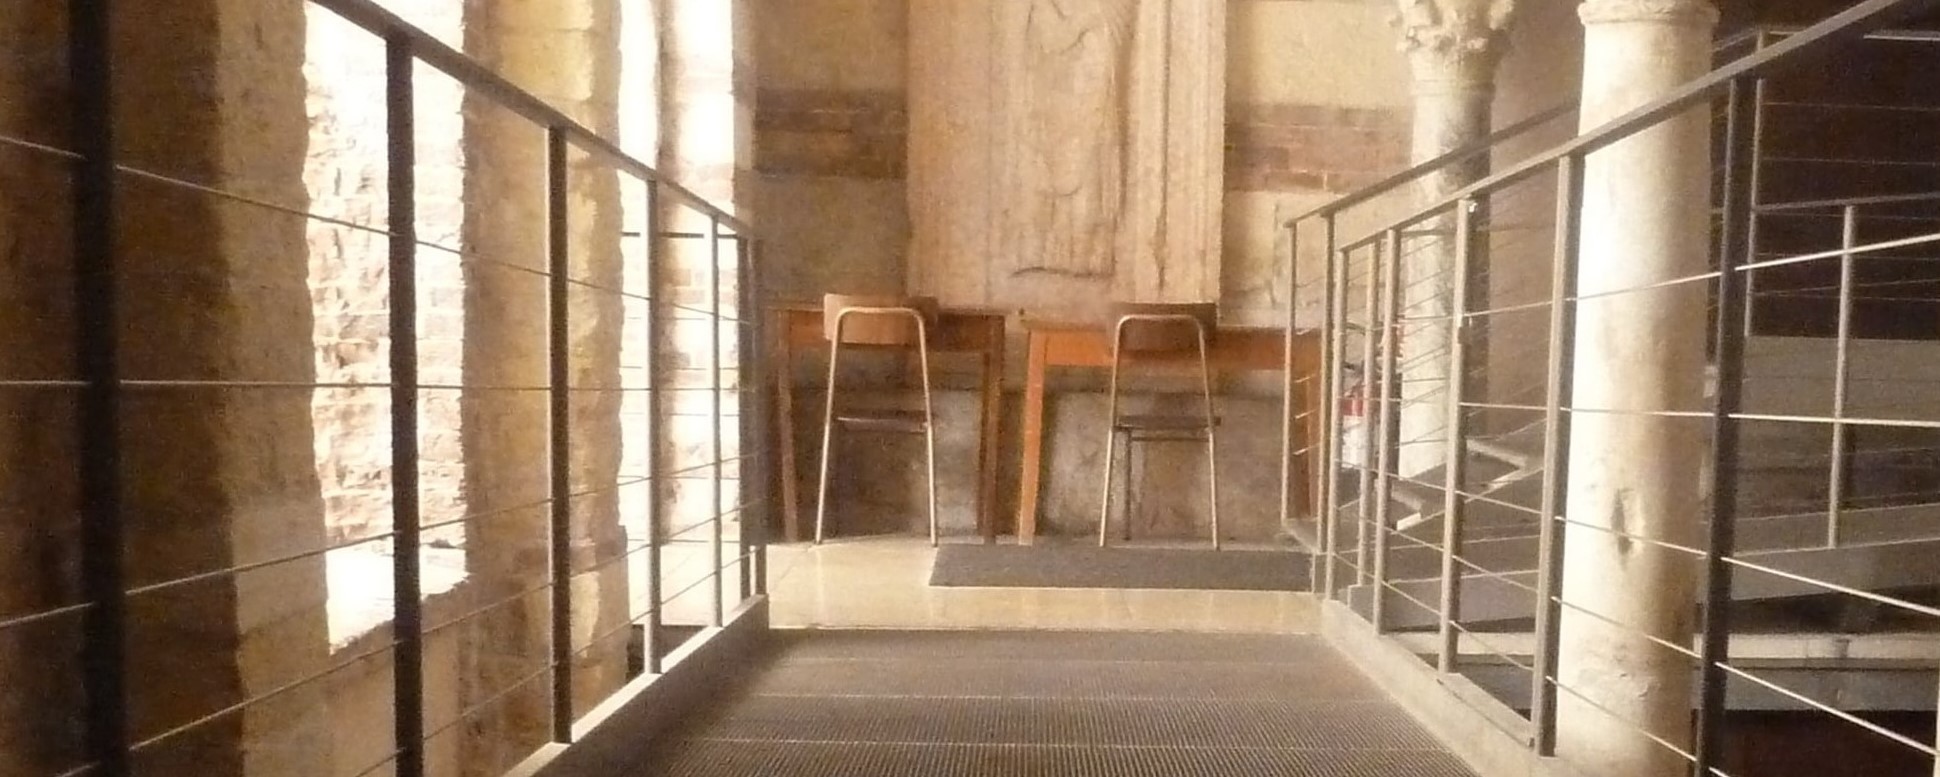 Accoglienza, accessibilità, inclusione sociale: tre obiettivi raggiunti nel complesso della Cattedrale - Chiese Vive - Chiese Verona